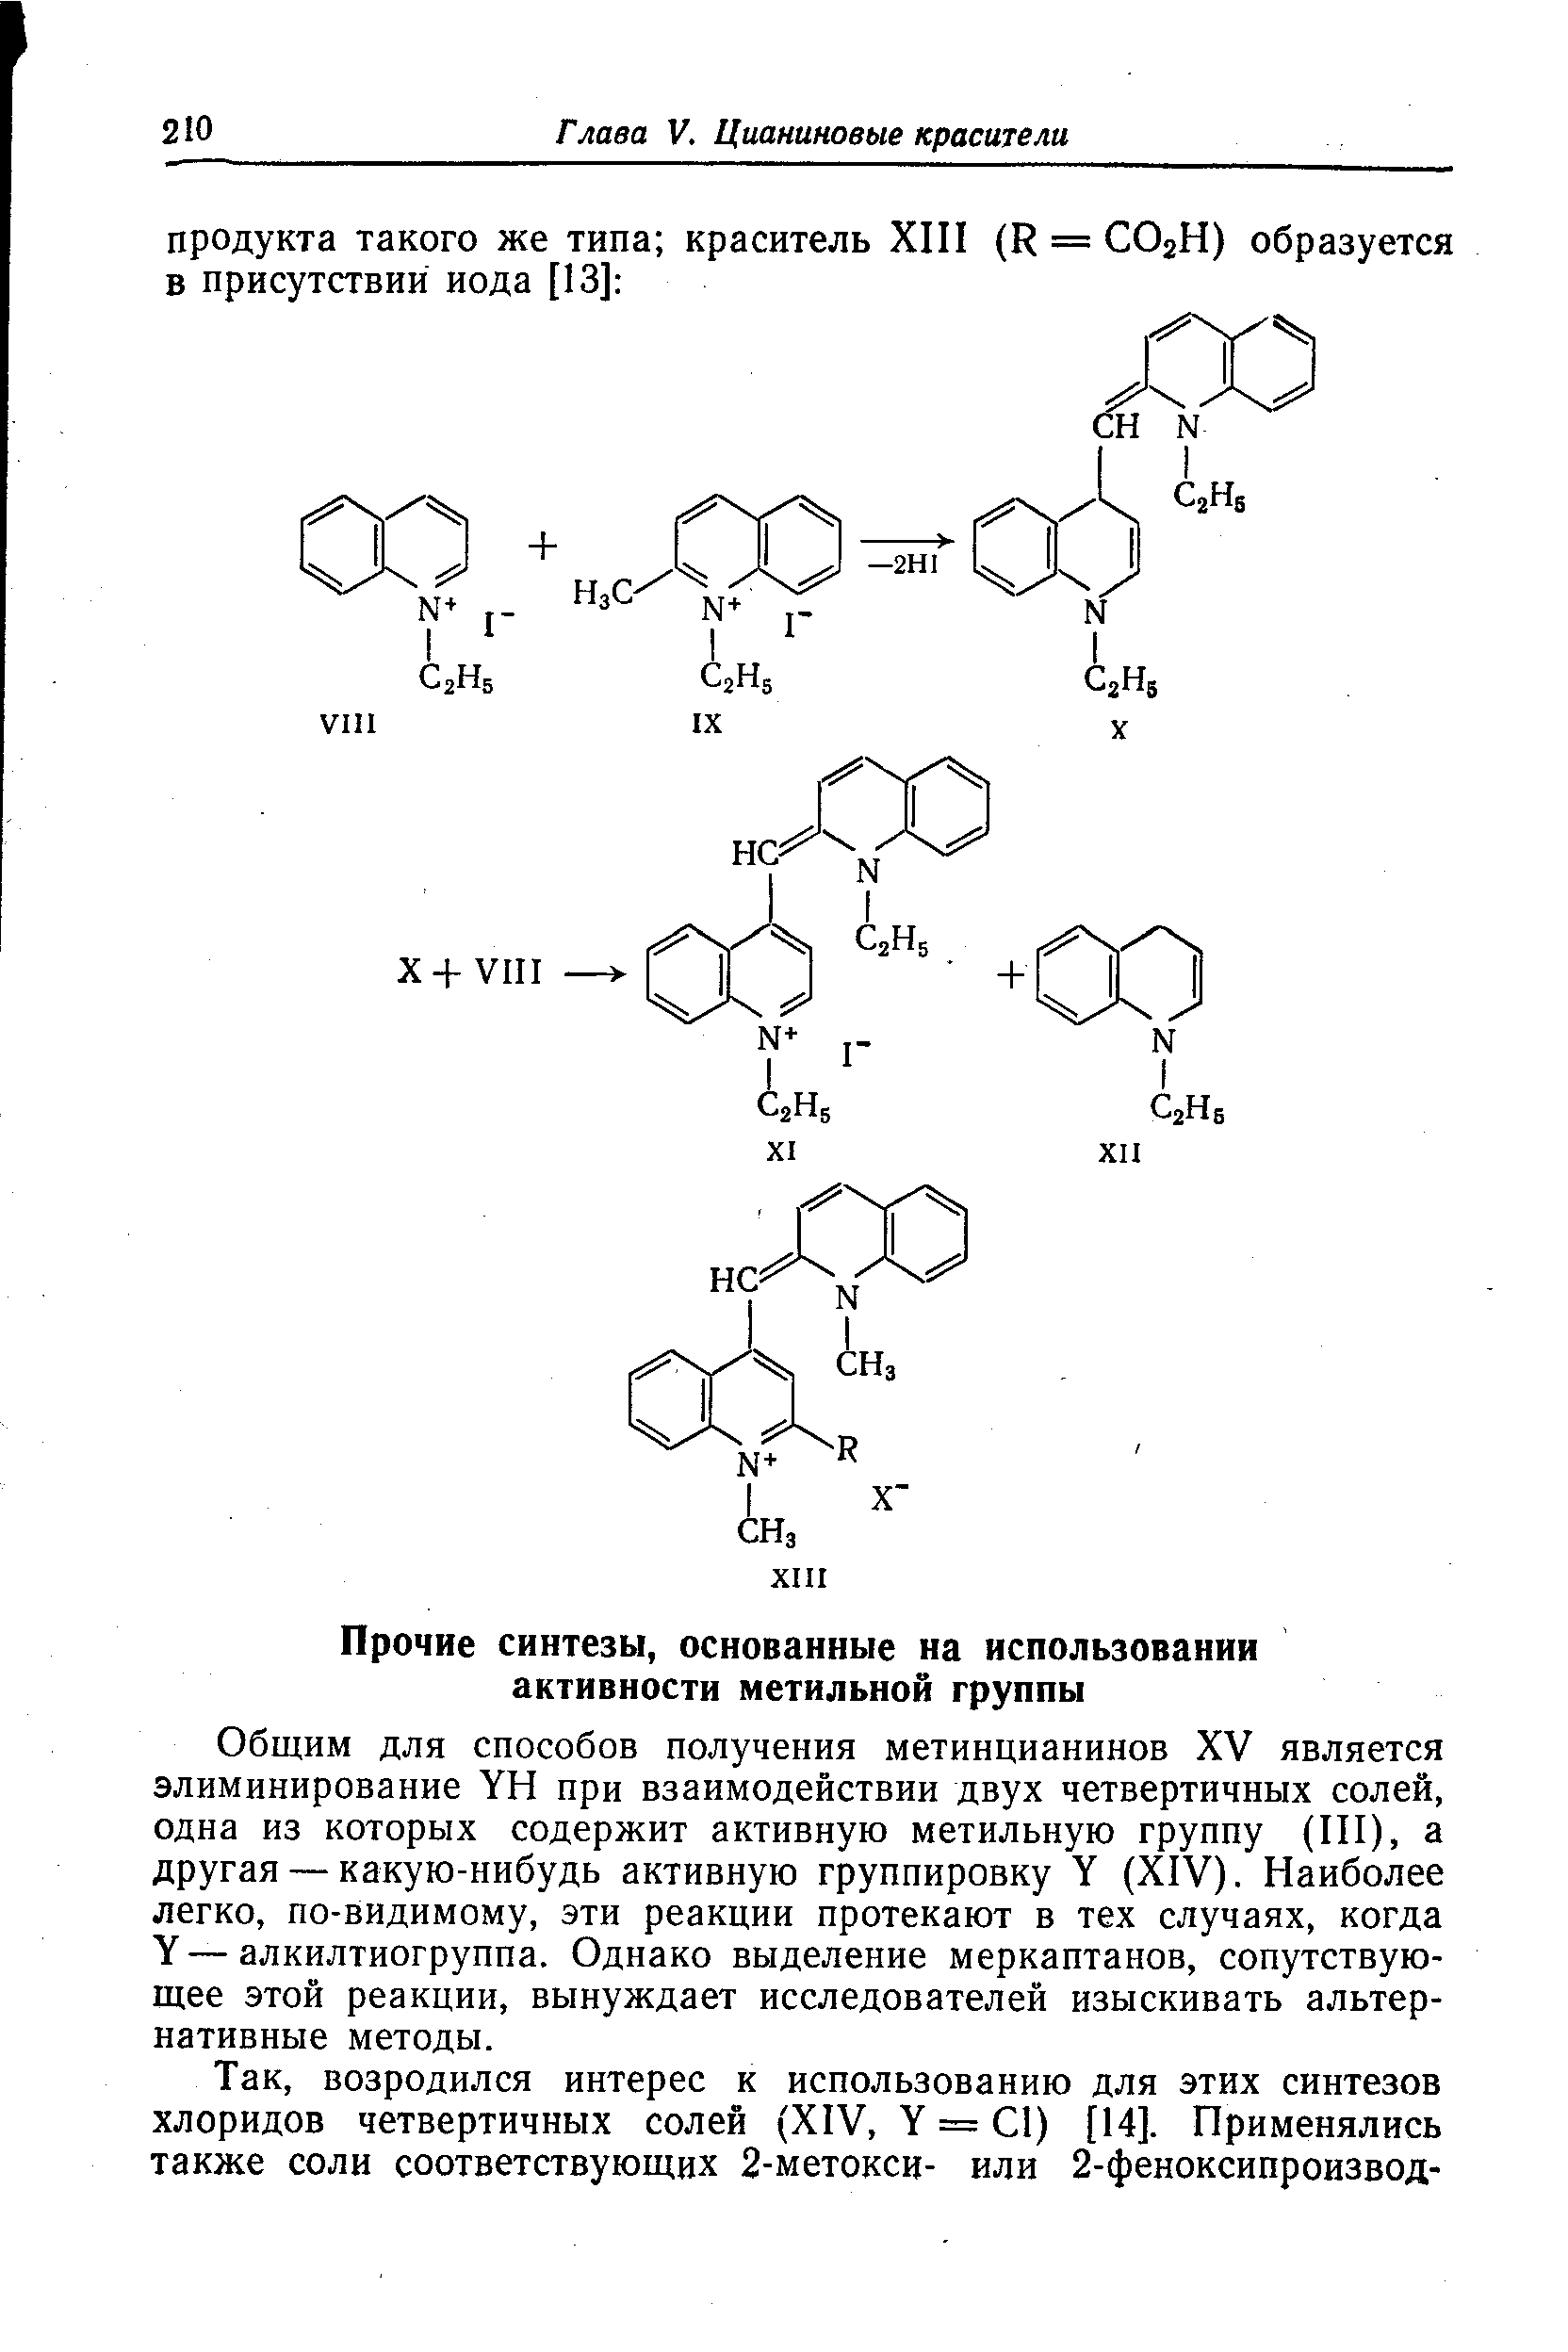 Общим для способов получения метинцианинов XV является элиминирование YH при взаимодействии двух четвертичных солей, одна из которых содержит активную метильную группу (III), а другая — какую-нибудь активную группировку Y (XIV). Наиболее легко, по-видимому, эти реакции протекают в тех случаях, когда Y—алкилтиогруппа. Однако выделение меркаптанов, сопутствующее этой реакции, вынуждает исследователей изыскивать альтернативные методы.